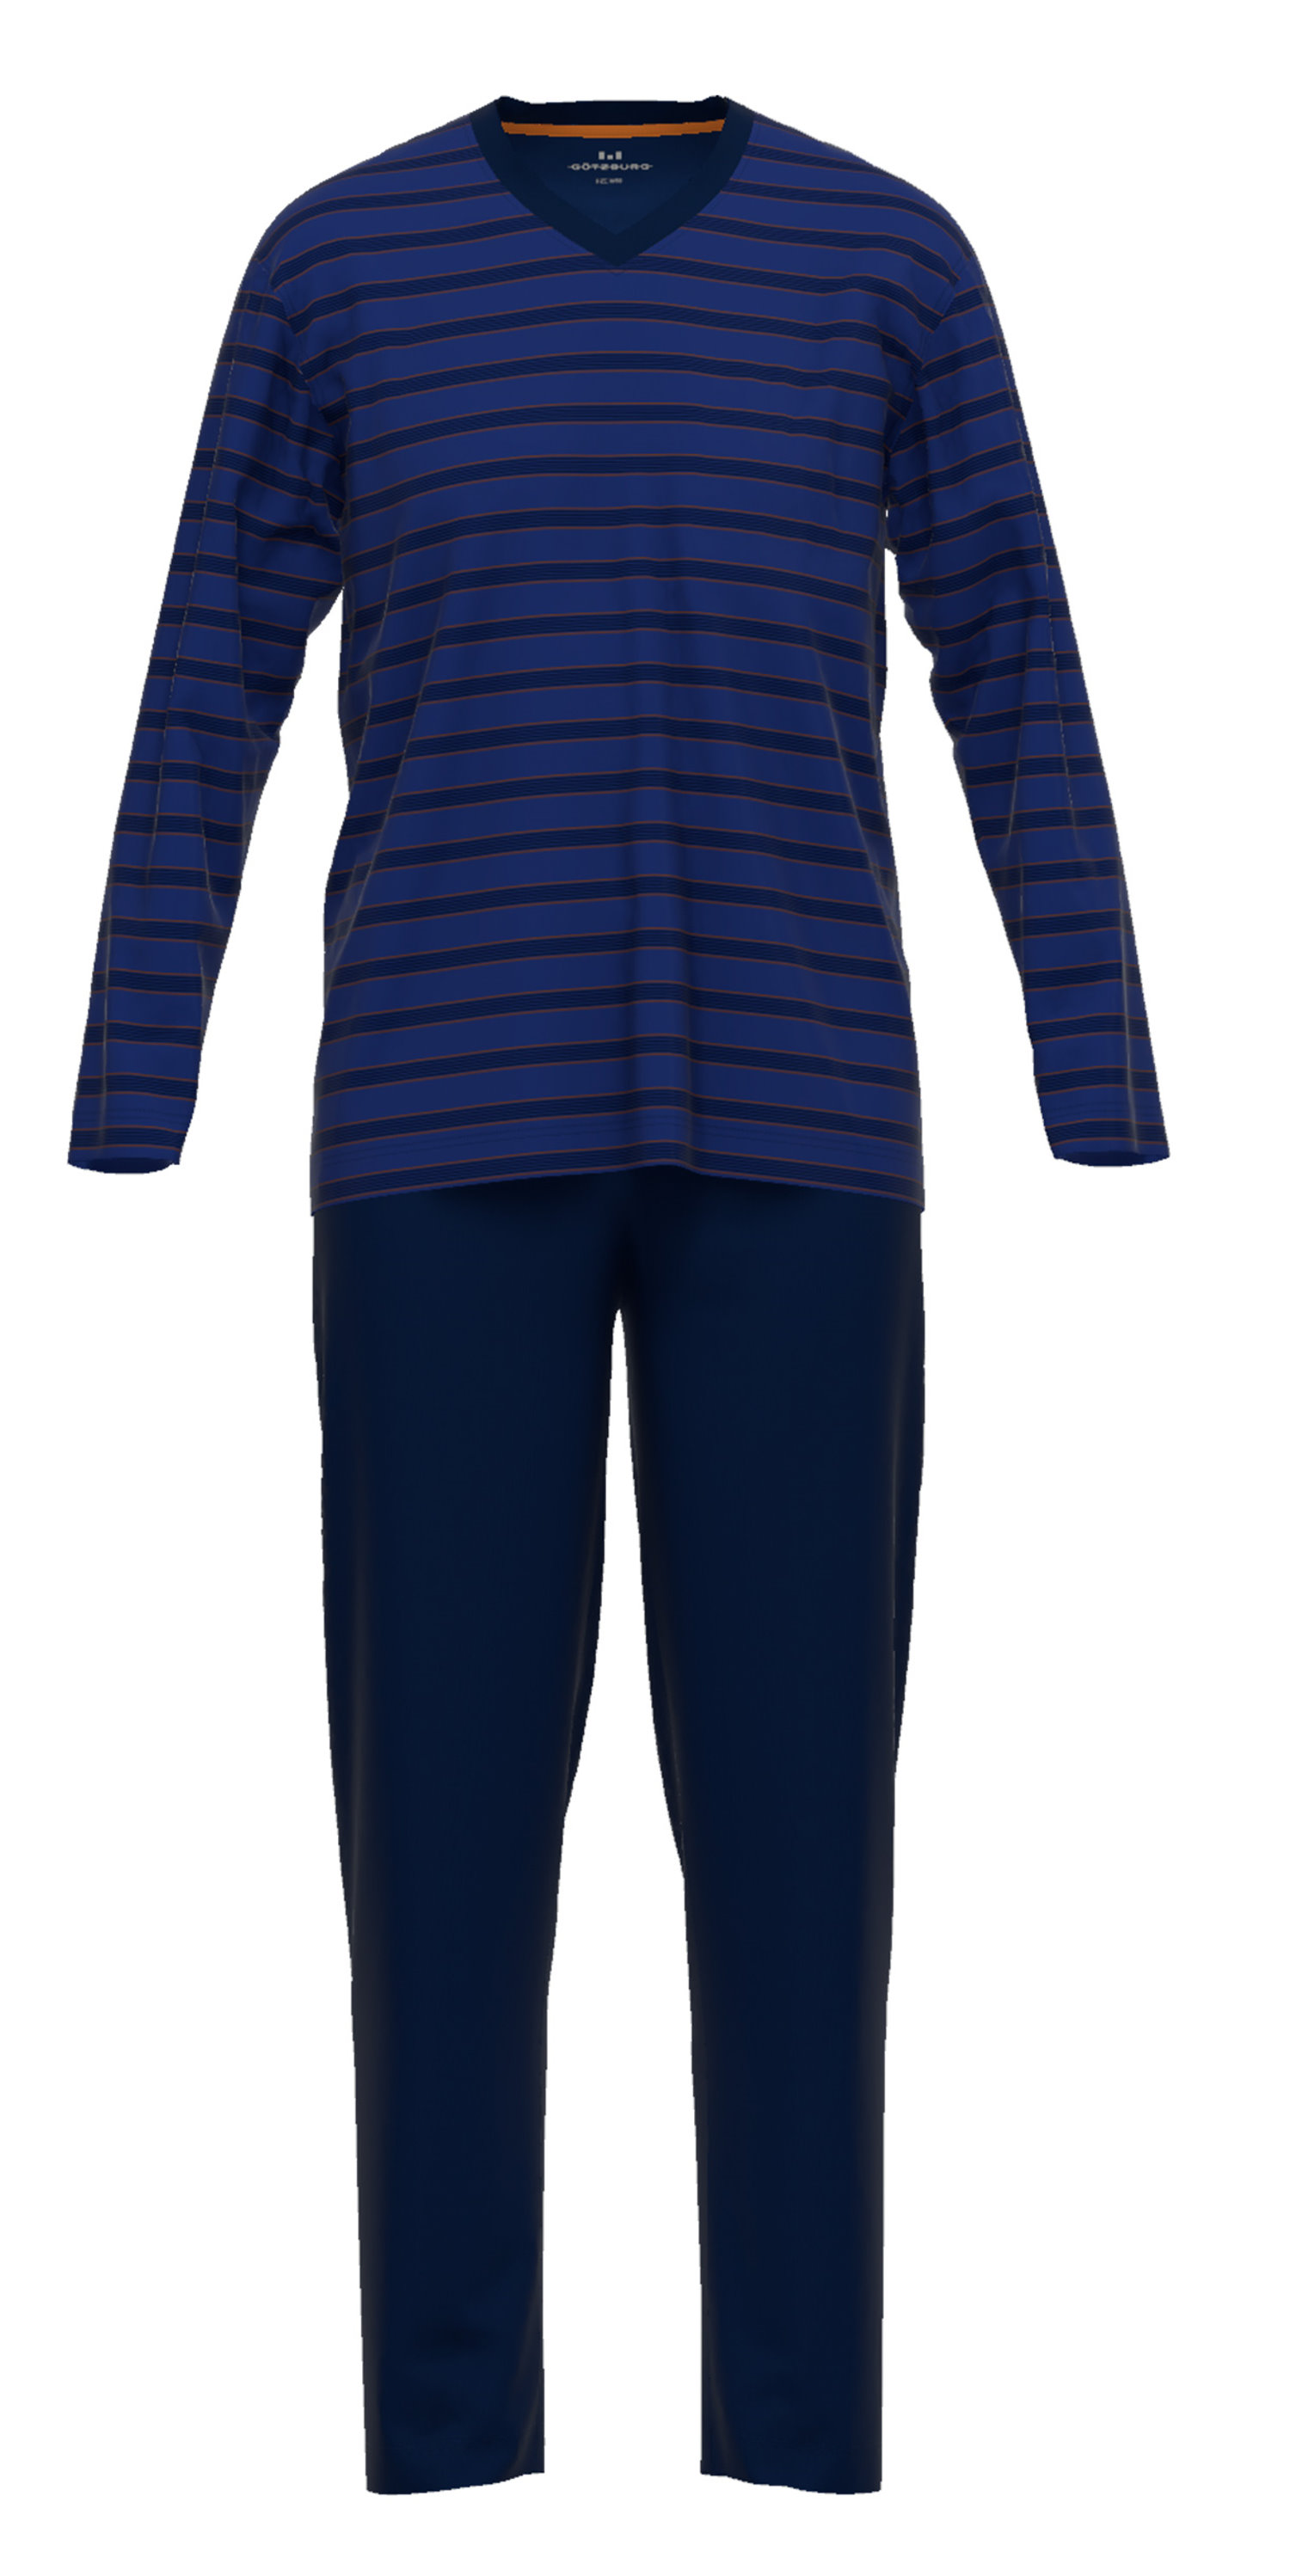 Götzburg Herren Schlafanzug Pyjama Baumwolle 652 eBay 452208 Jersey | Qualität